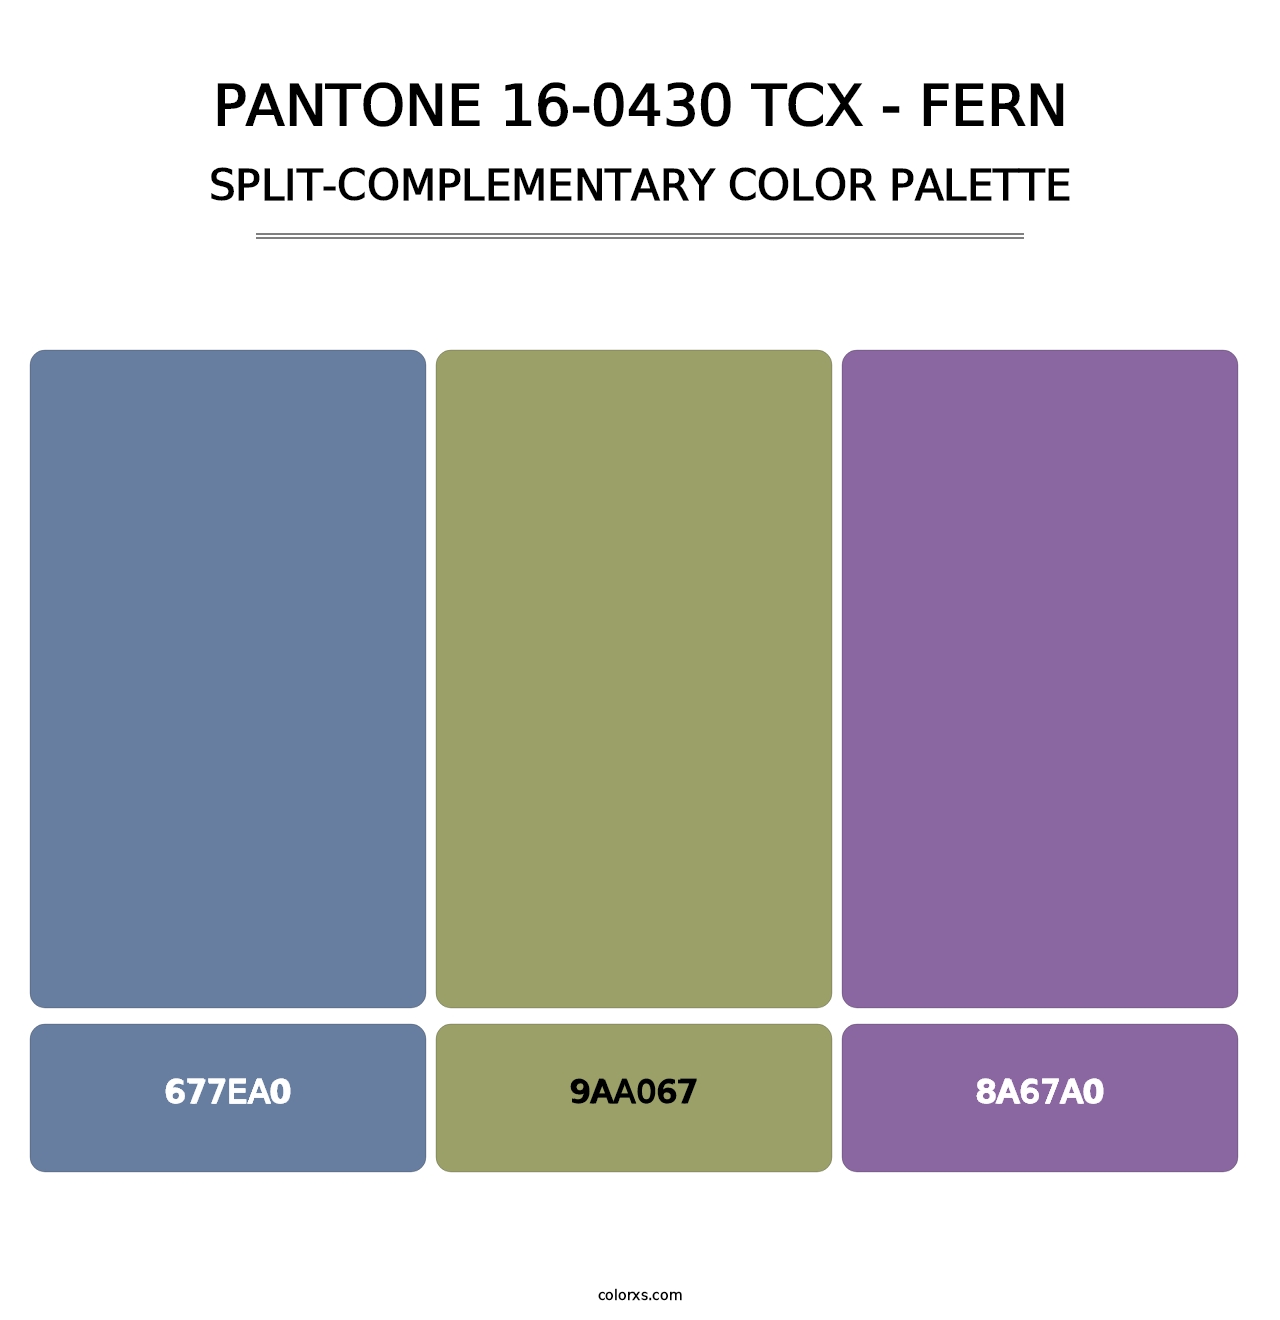 PANTONE 16-0430 TCX - Fern - Split-Complementary Color Palette